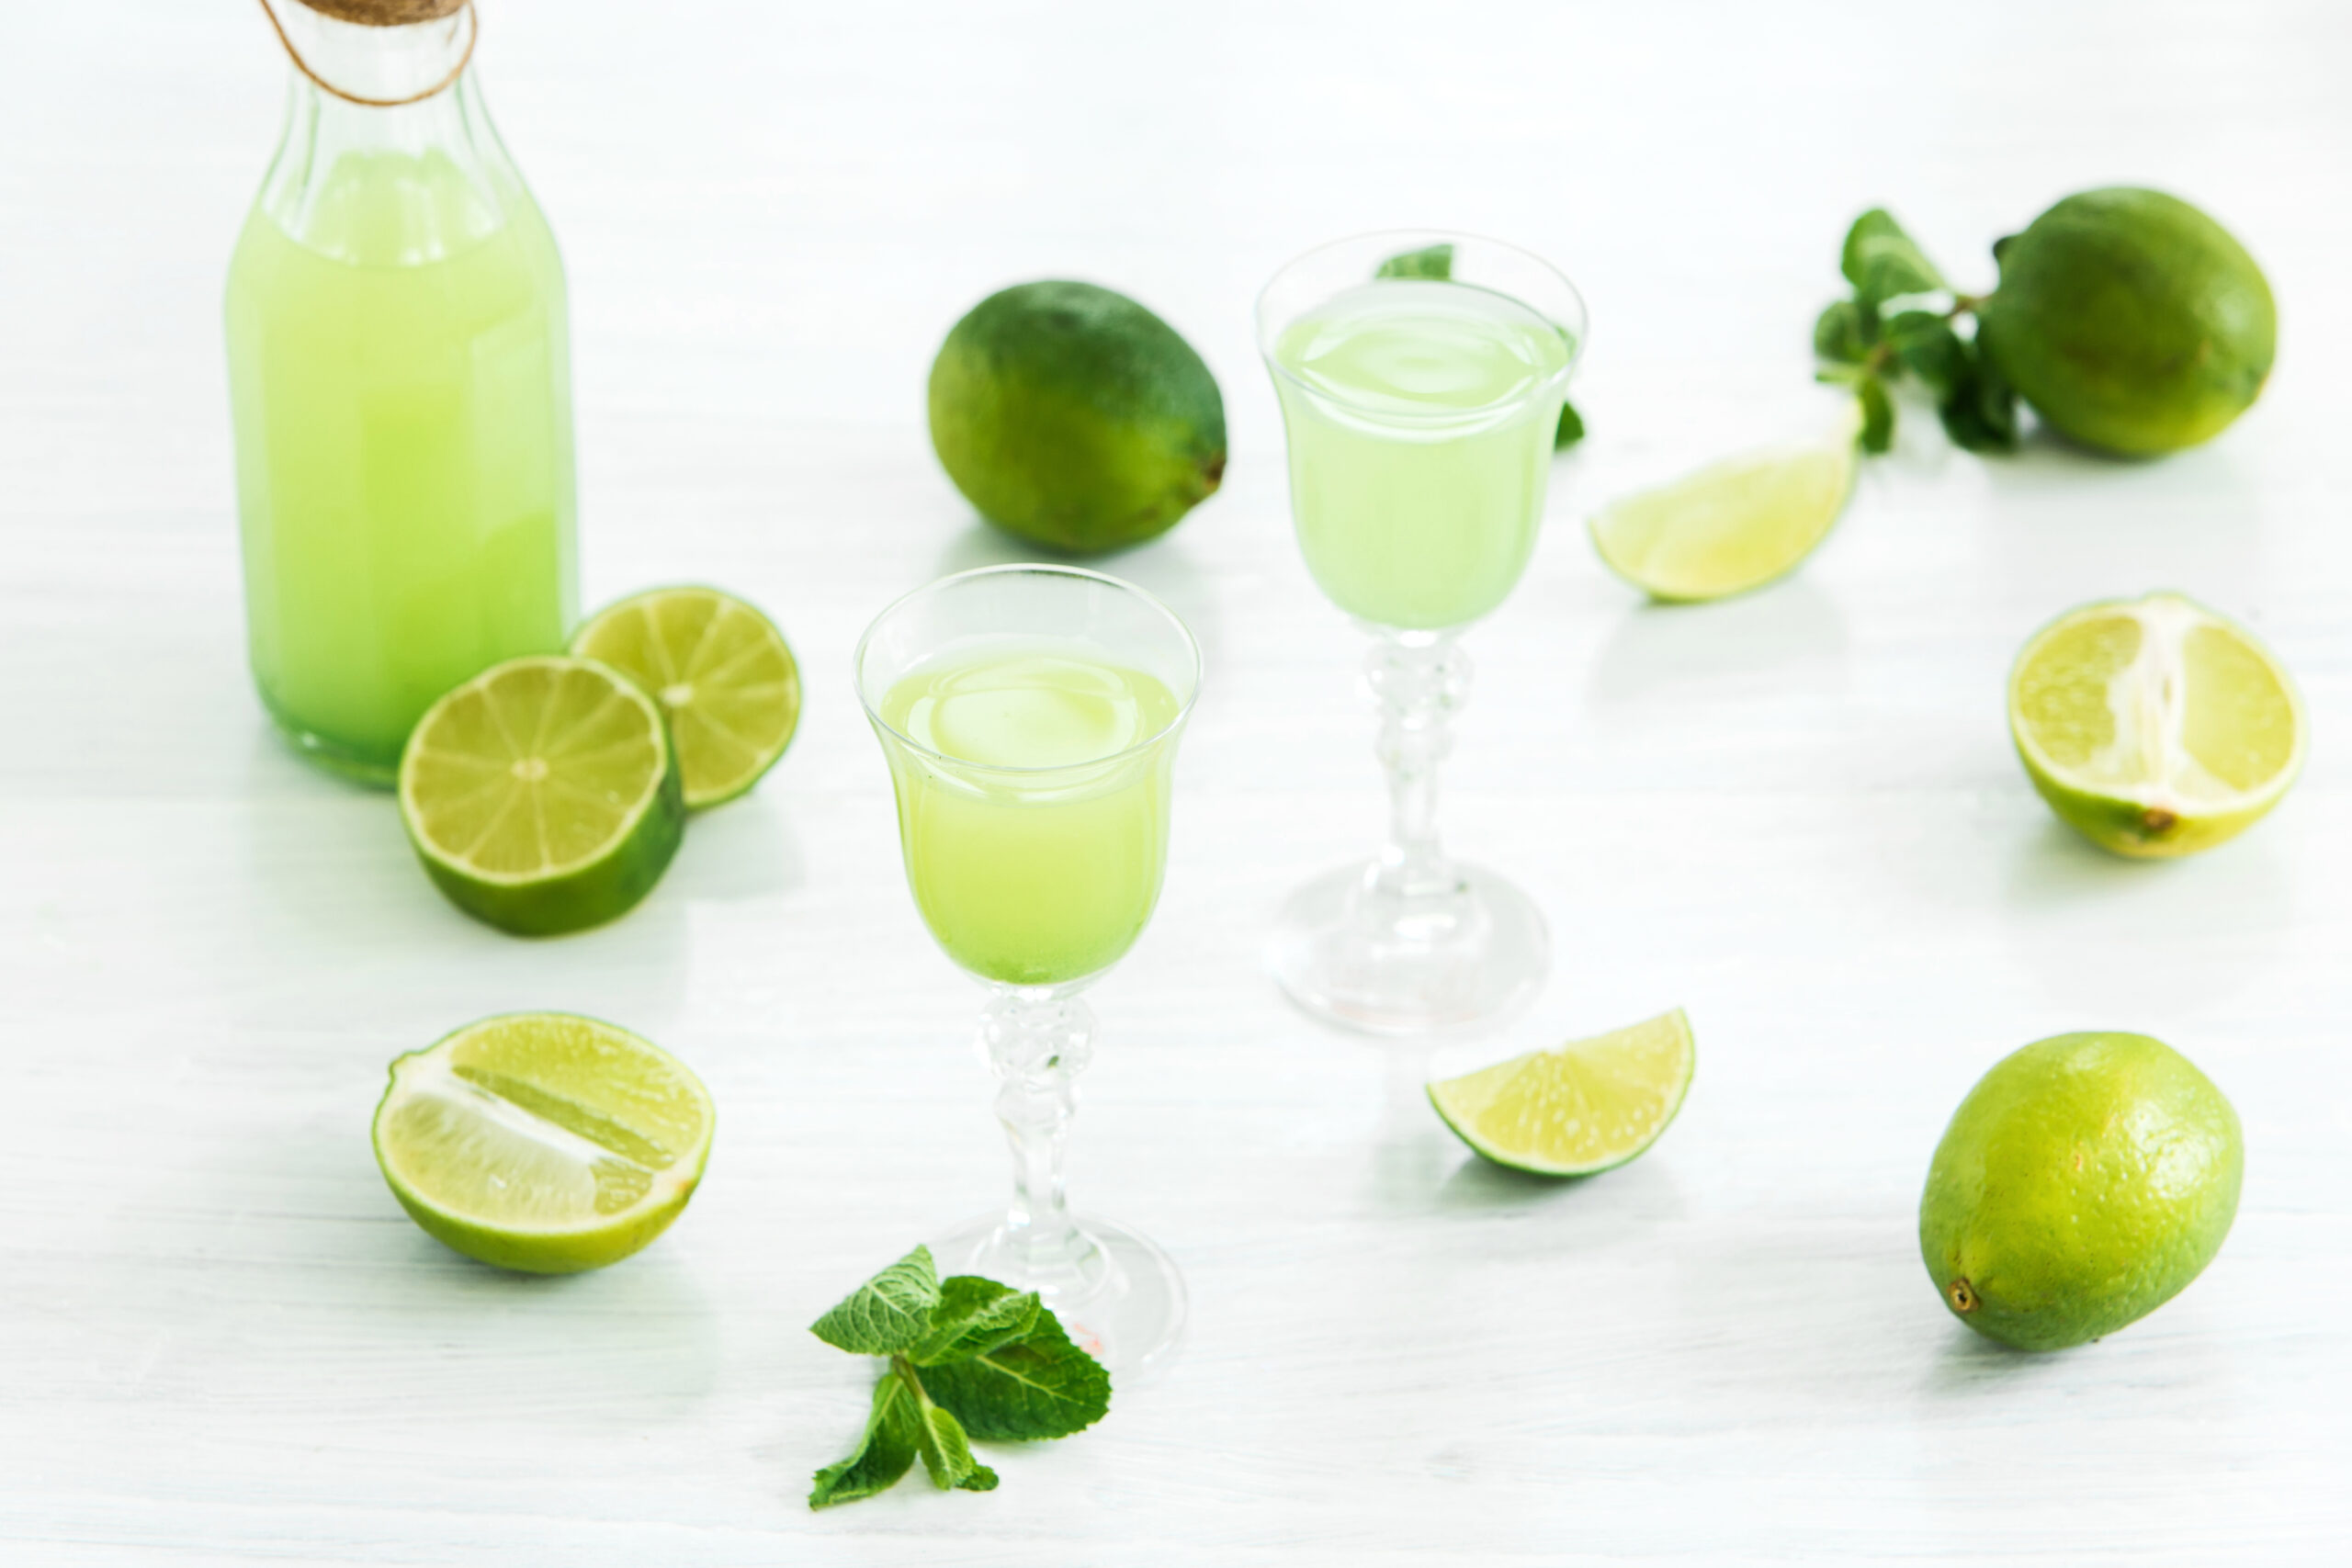 home-lime-liquor-glass-fresh-lemons-limes-white-scaled Índice de massa corporal (IMC): Entenda seu funcionamento e importância Perder Barriga Perder Peso  